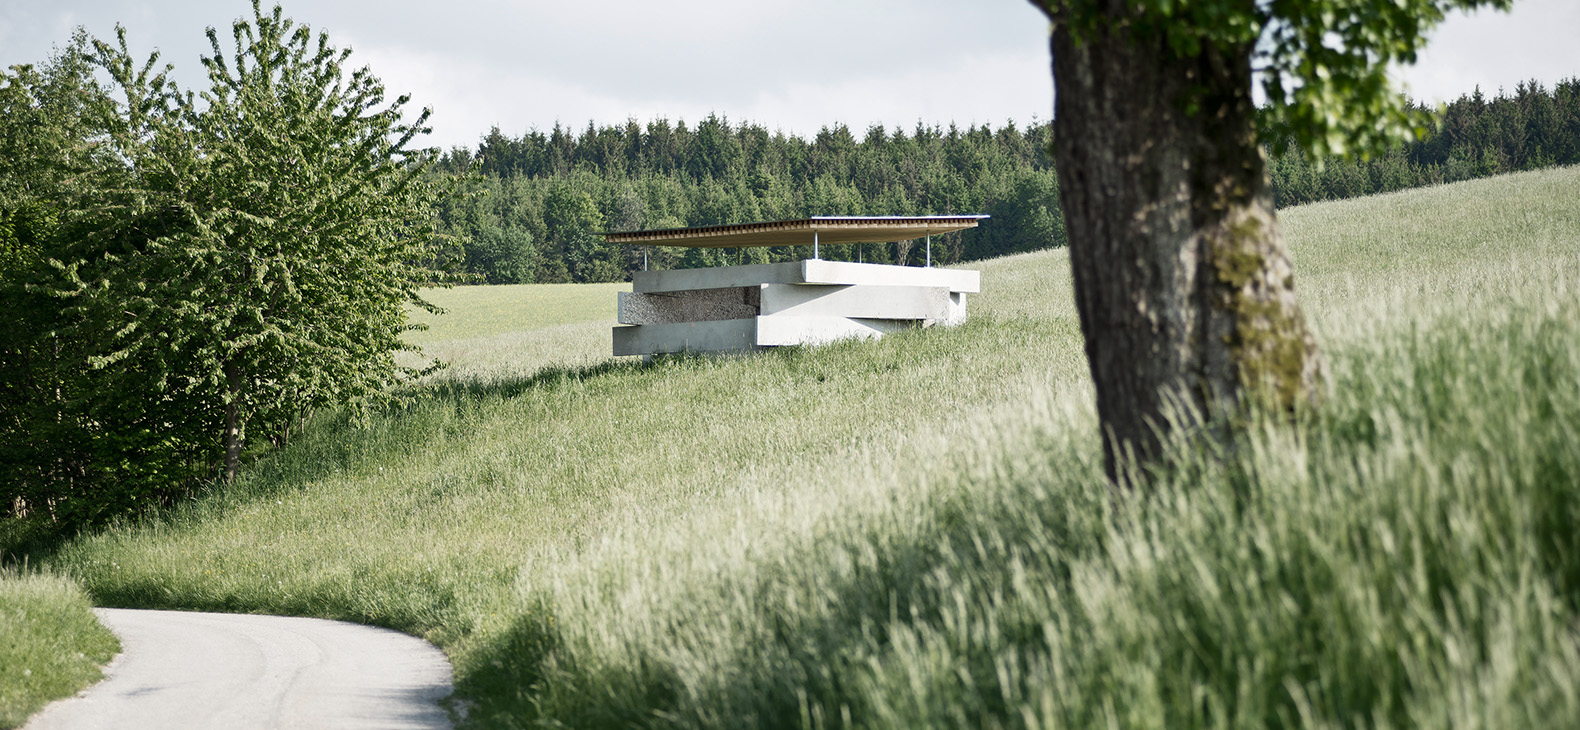 Kenotaph Hinterweintal, Fertigstellung 2015: Blick in die Landschaft in der Ferne sieht man ein Gebäude.